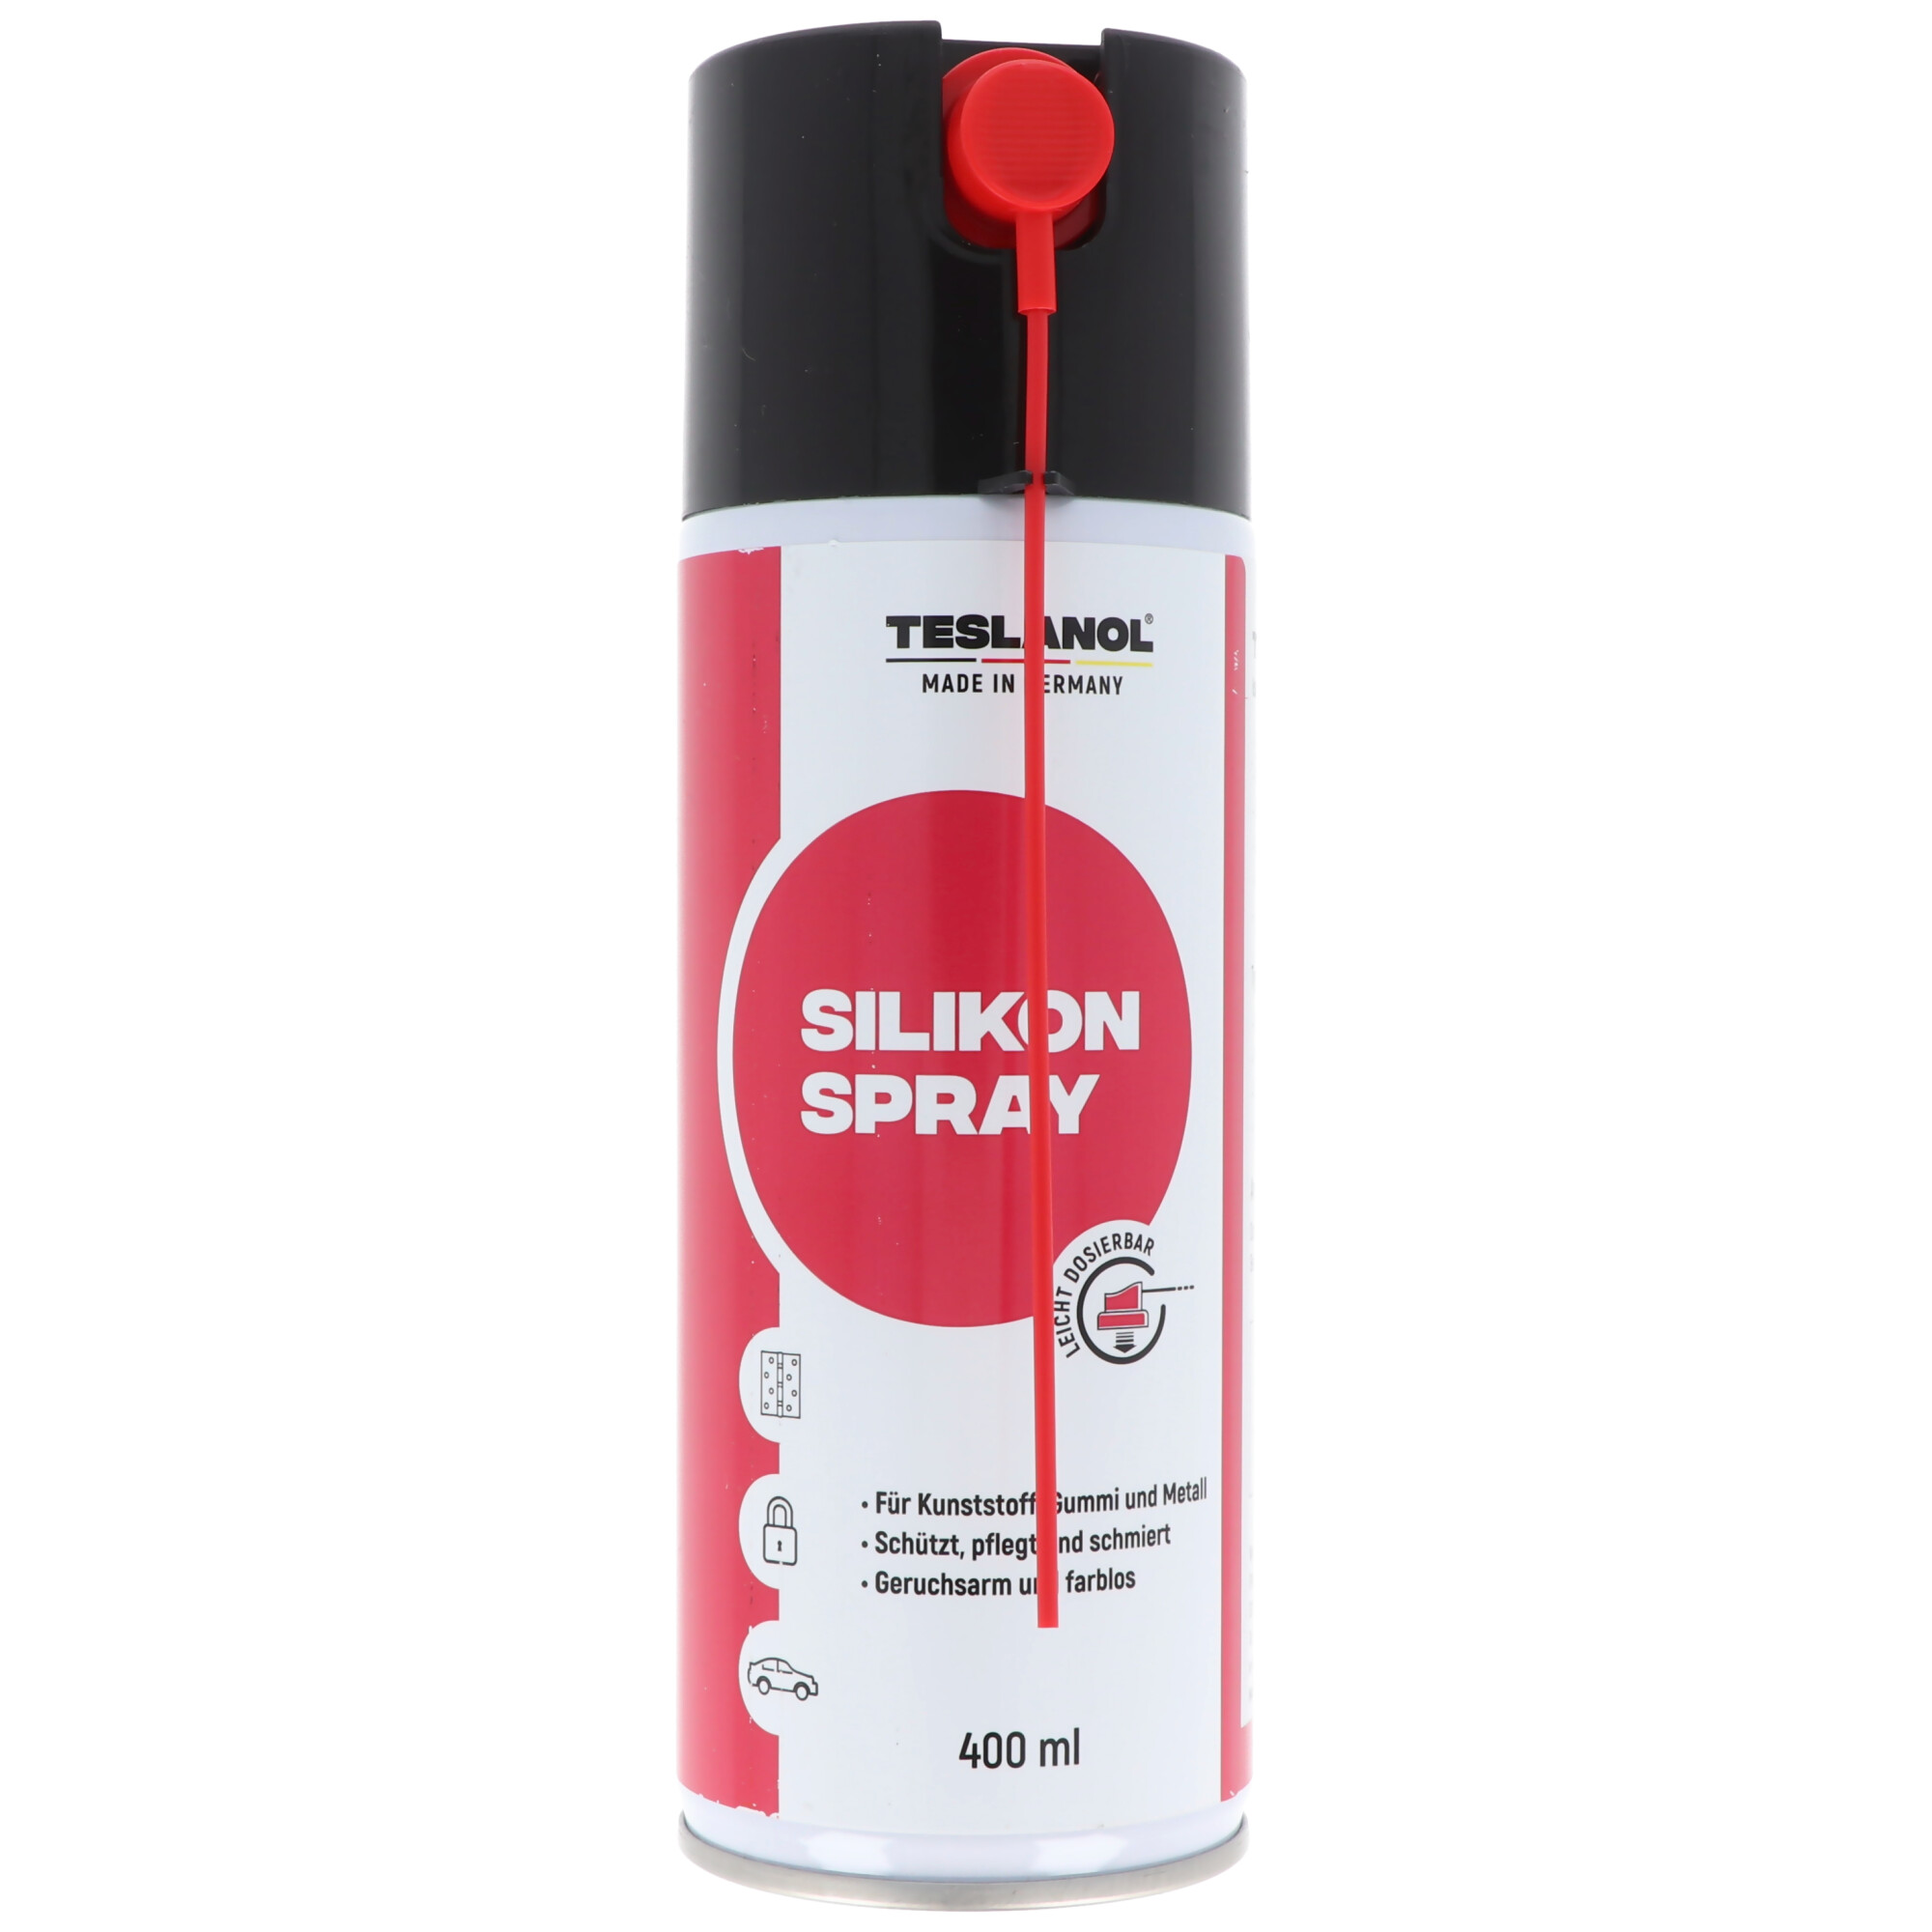 Teslanol Silikonspray isoliert schützt schmiert 400 ml